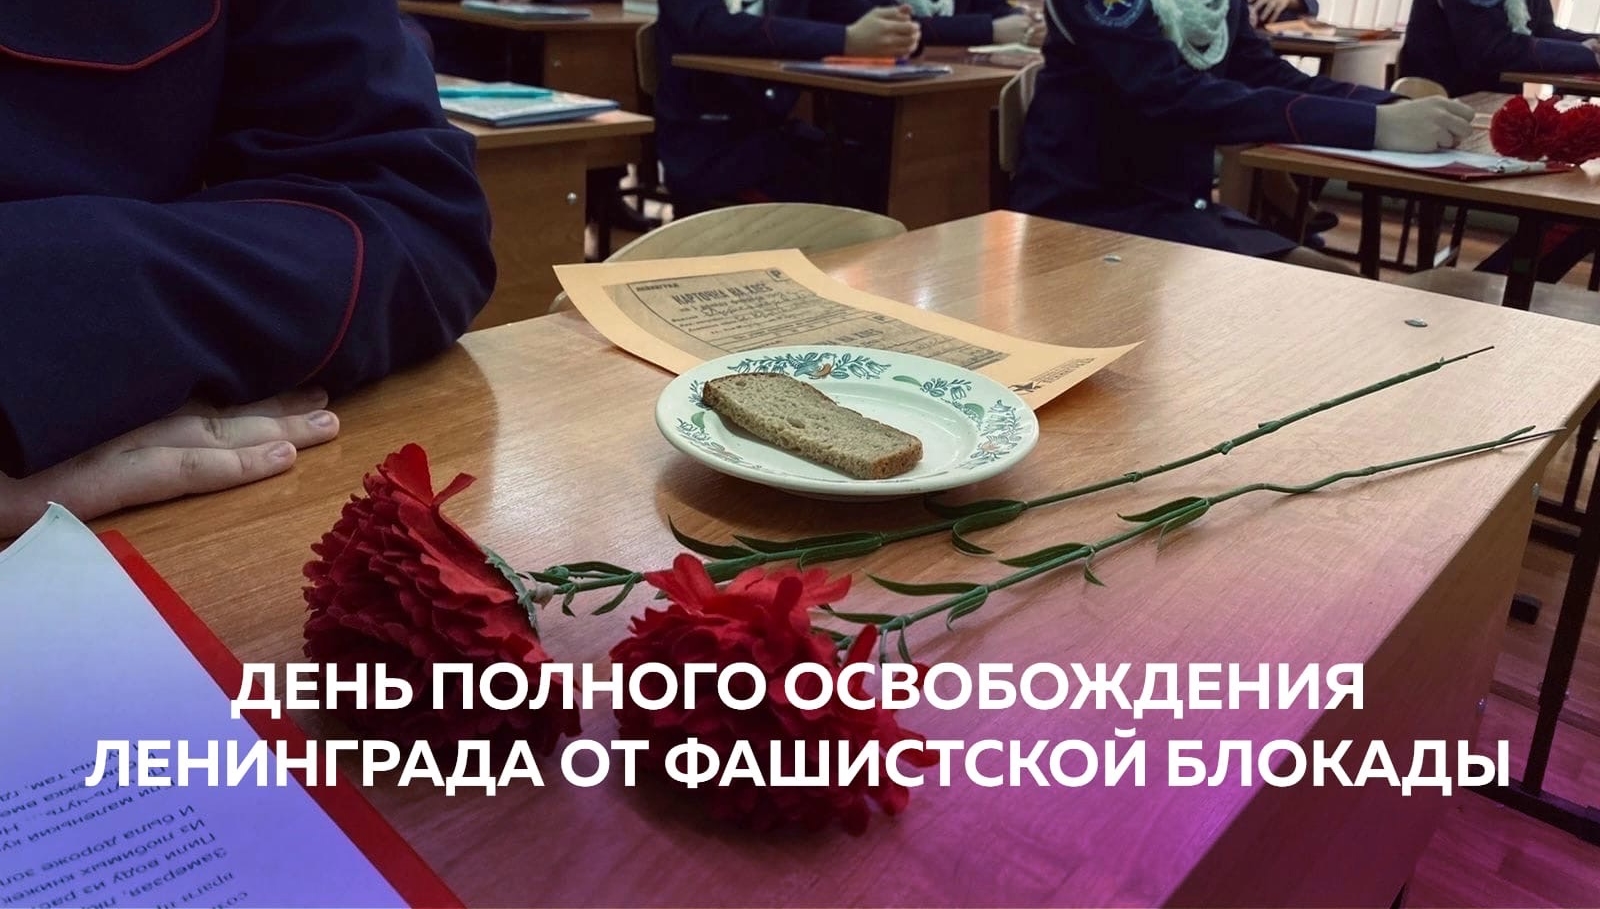 Школьники Мордовии присоединились к акциям РДШ, посвящённым Дню полного освобождения Ленинграда от фашистской блокады (1944 год)